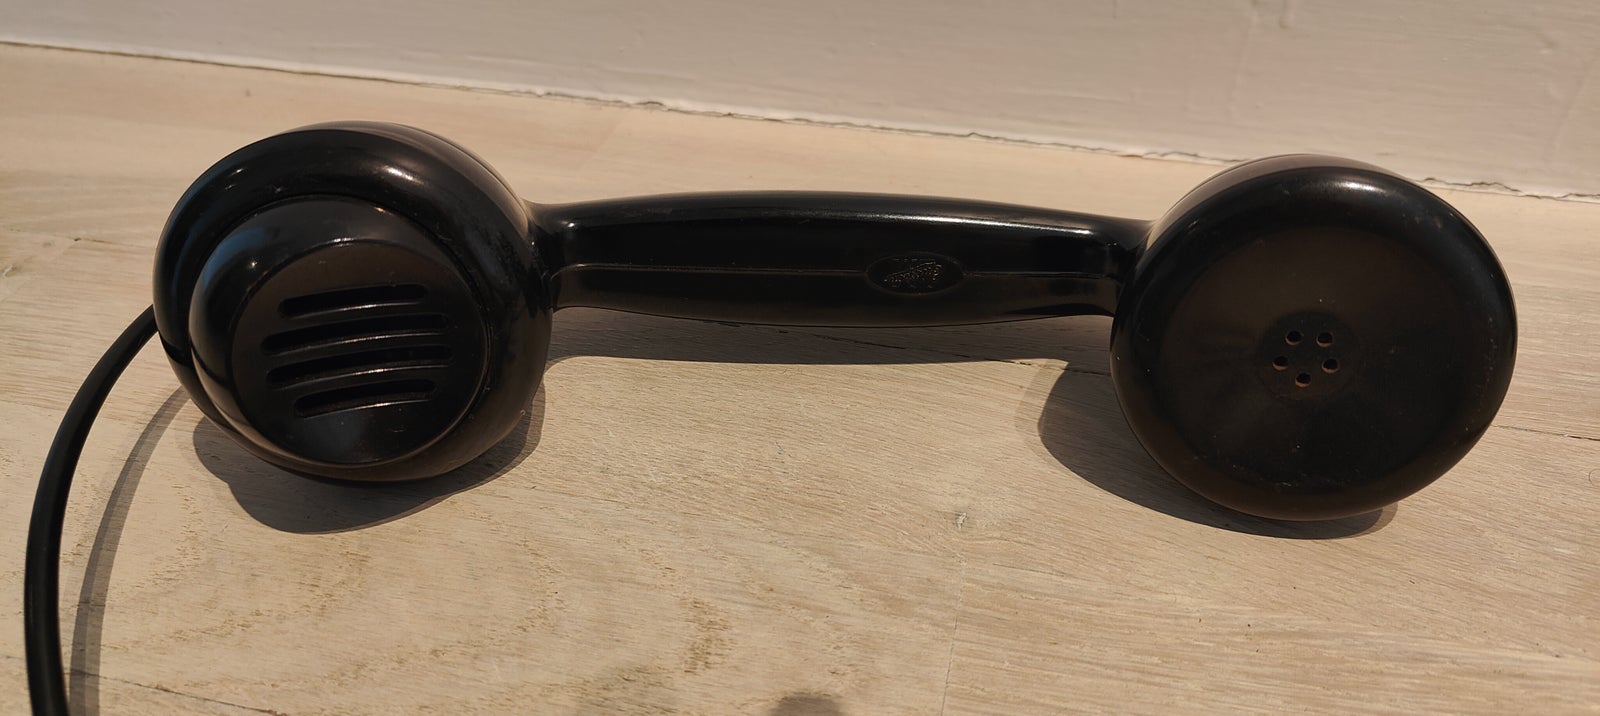 Antik vægtelefon fra Ericsson, Plastik, 70 år gl.